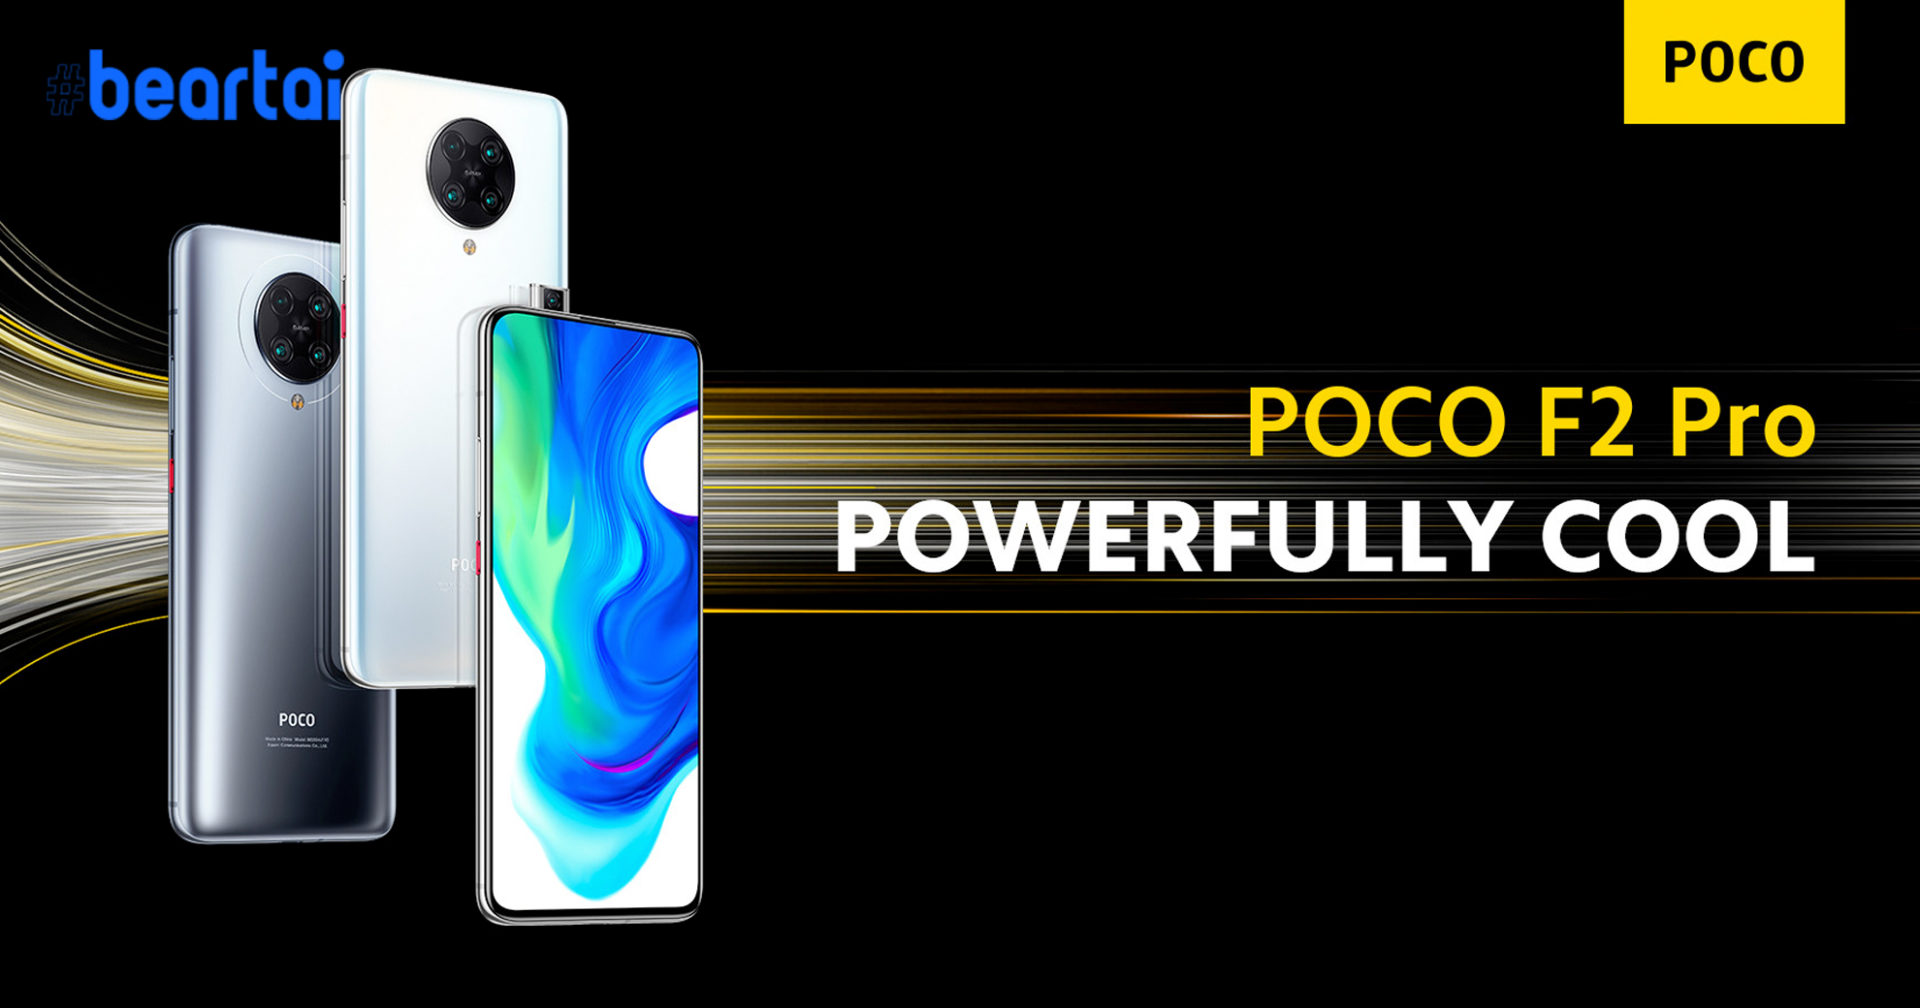 เปิดตัว ‘POCO F2 Pro’ สมาร์ตโฟนระดับโปร กล้องหลังครบระยะ, Snapdragon 865 และระบบระบายความร้อนแบบไอน้ำ